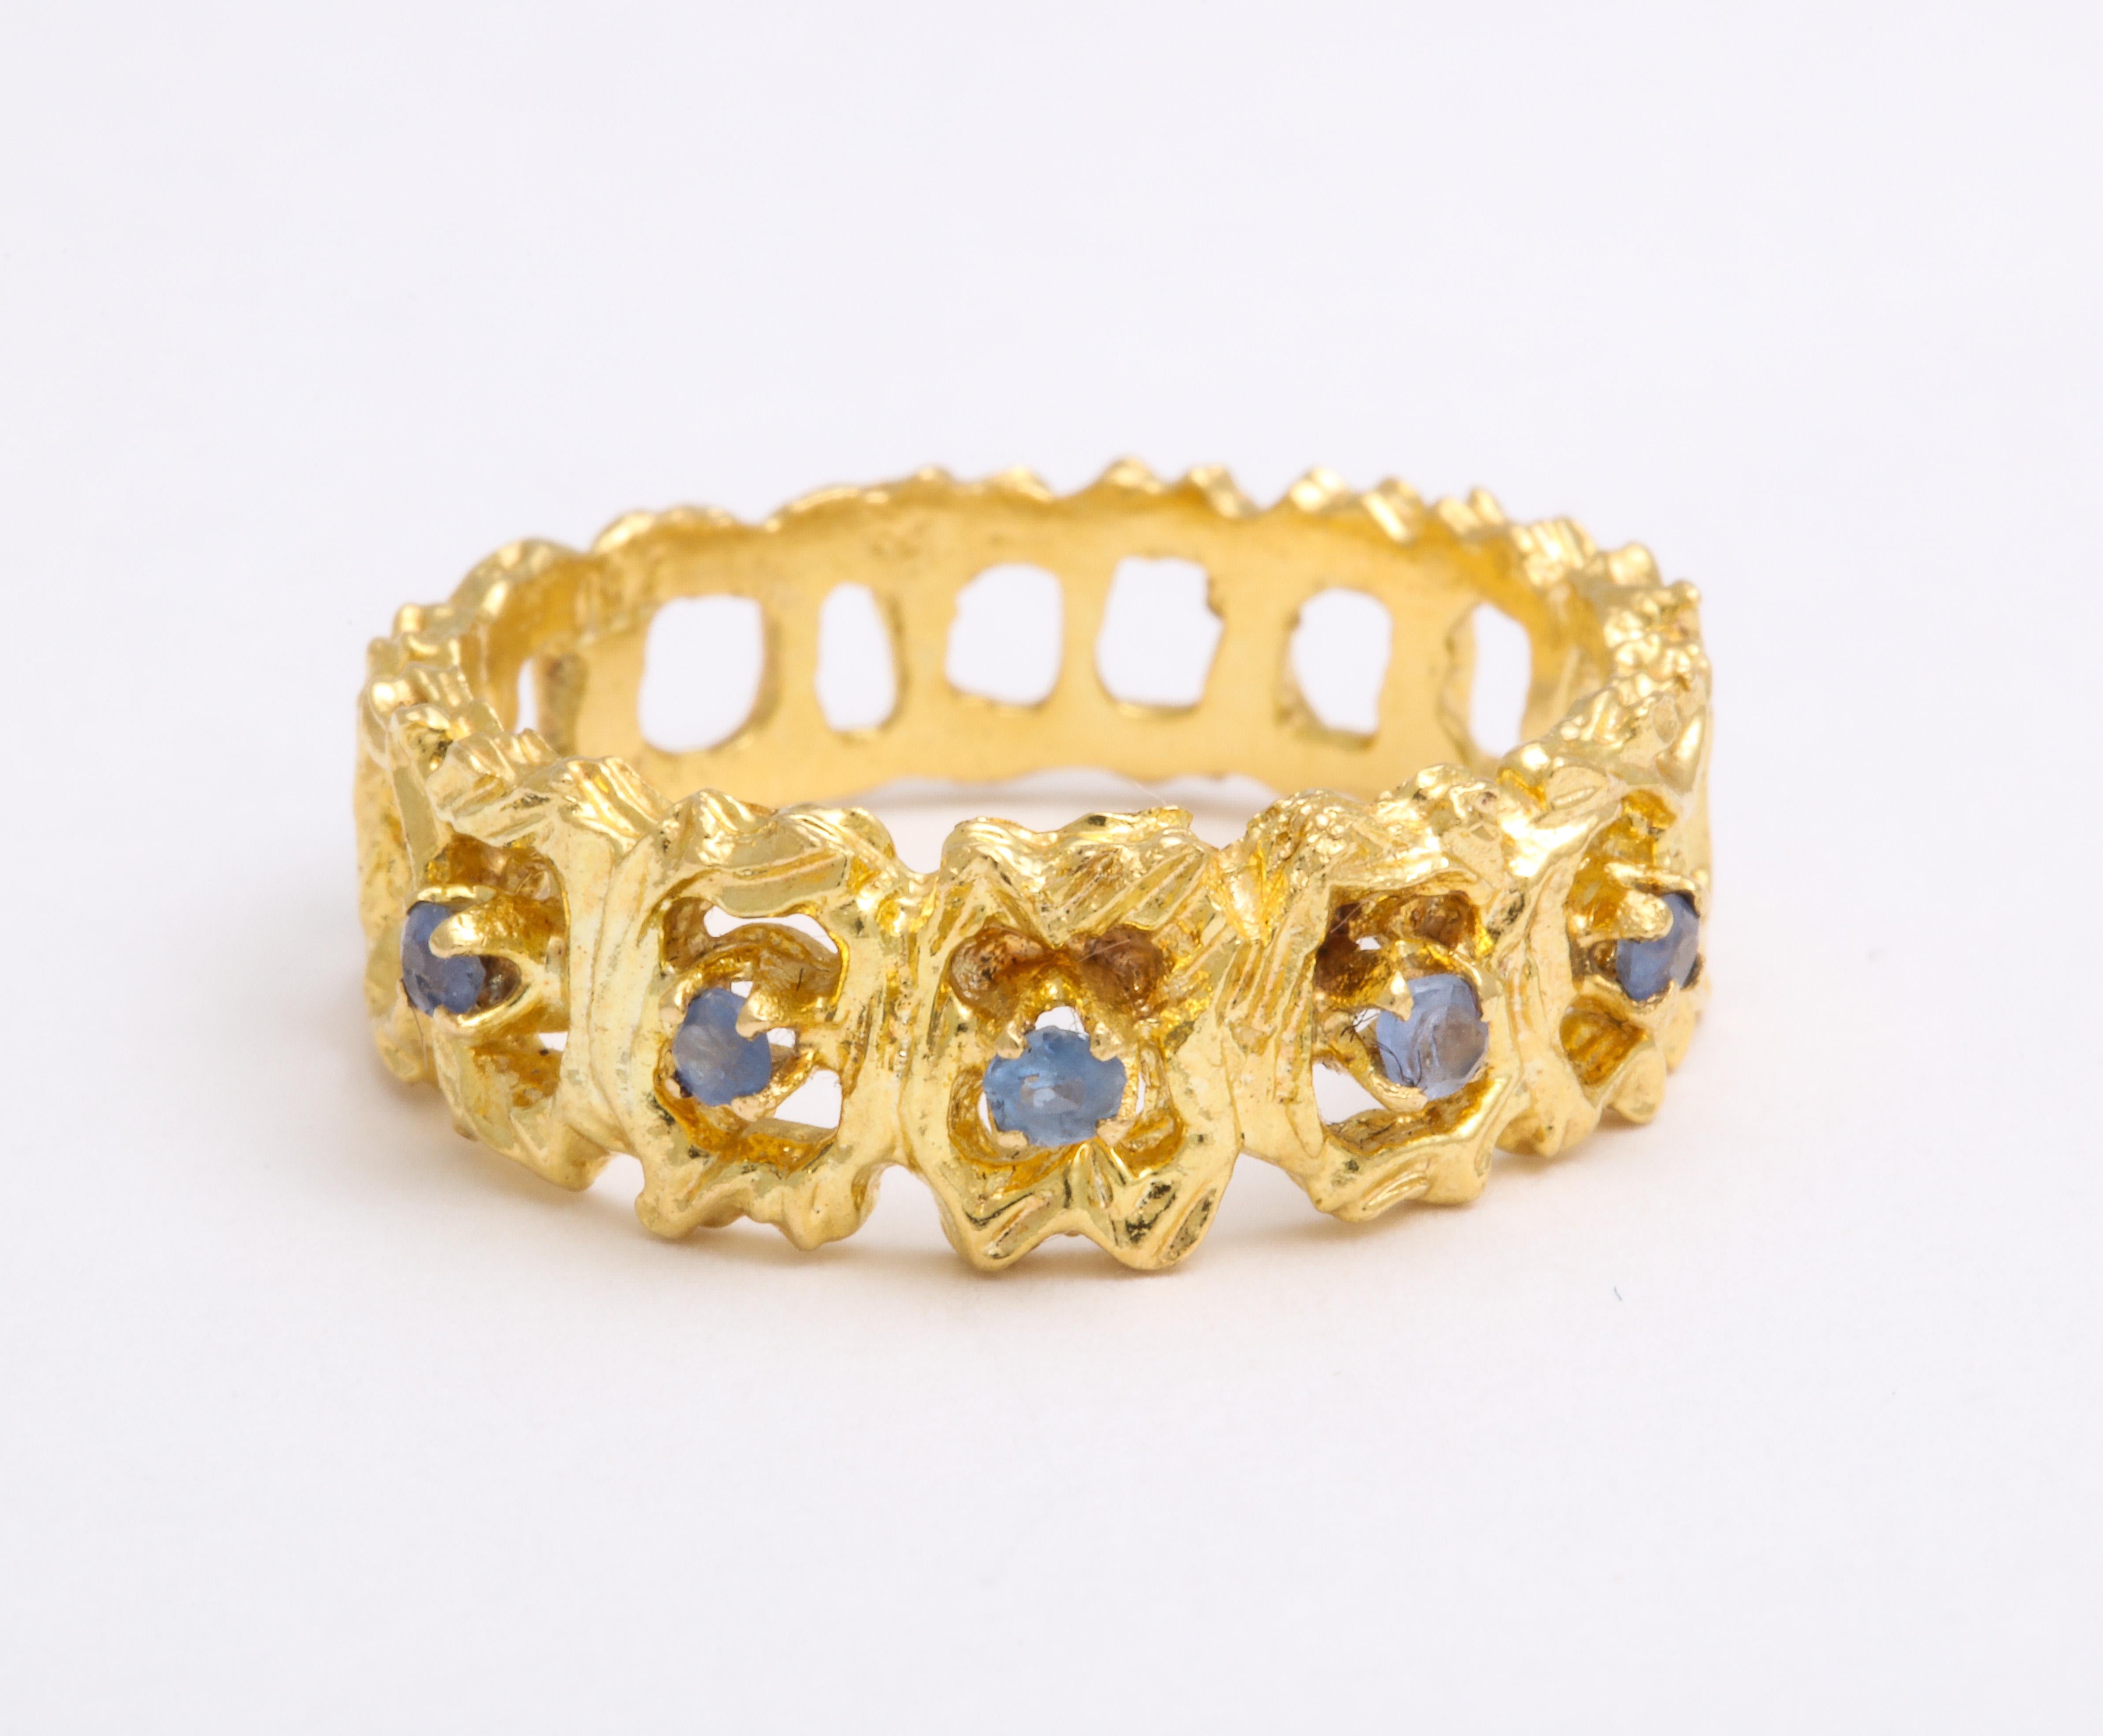 Les cieux touchent ce bracelet en or 18 carats en sertissant des saphirs bleus de Ceylan scintillants autour de la face en forme de dentelle. Les saphirs sont de petites pierres avec peu de facettes, pas plus de 3,5 points de poids total, mais leur